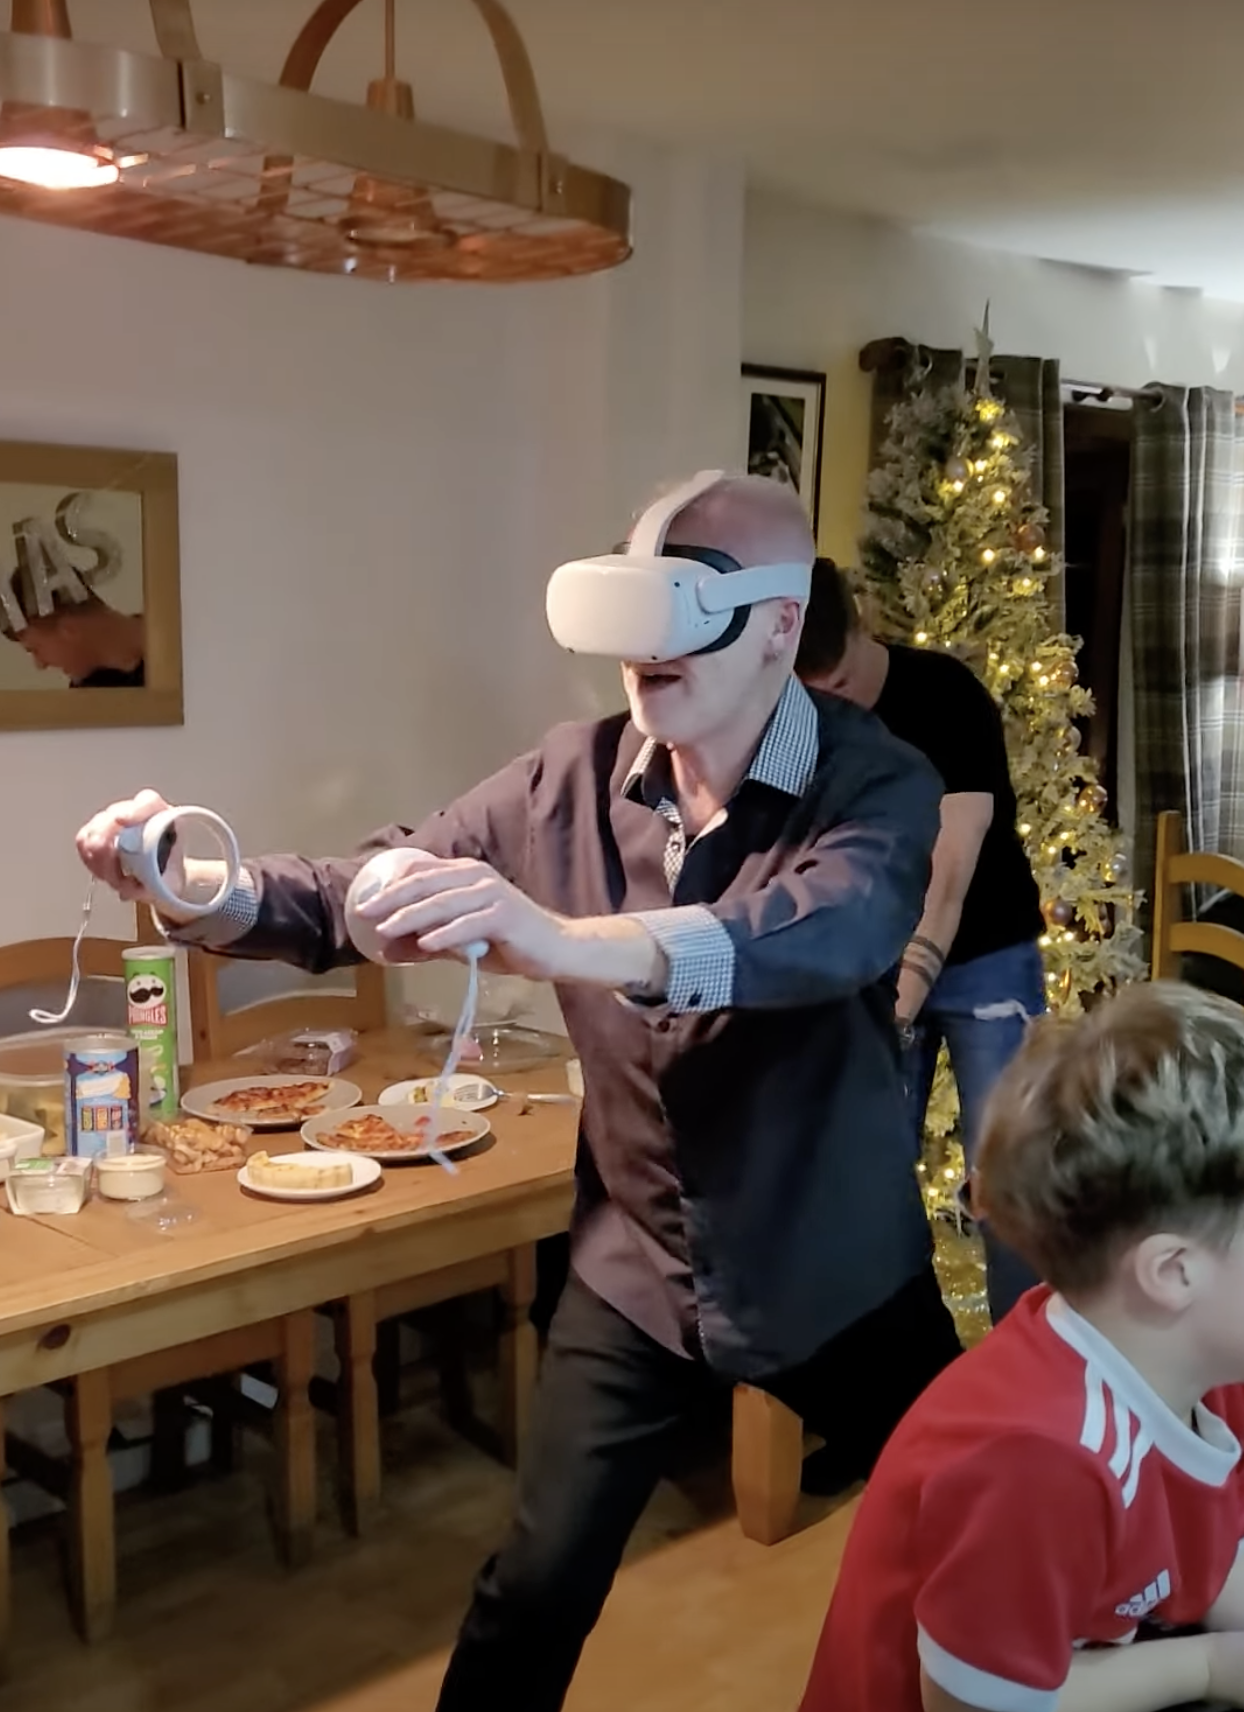 Az első találkozás egy VR headsettel mindig letaglózó és szinte testen kívüli élmény